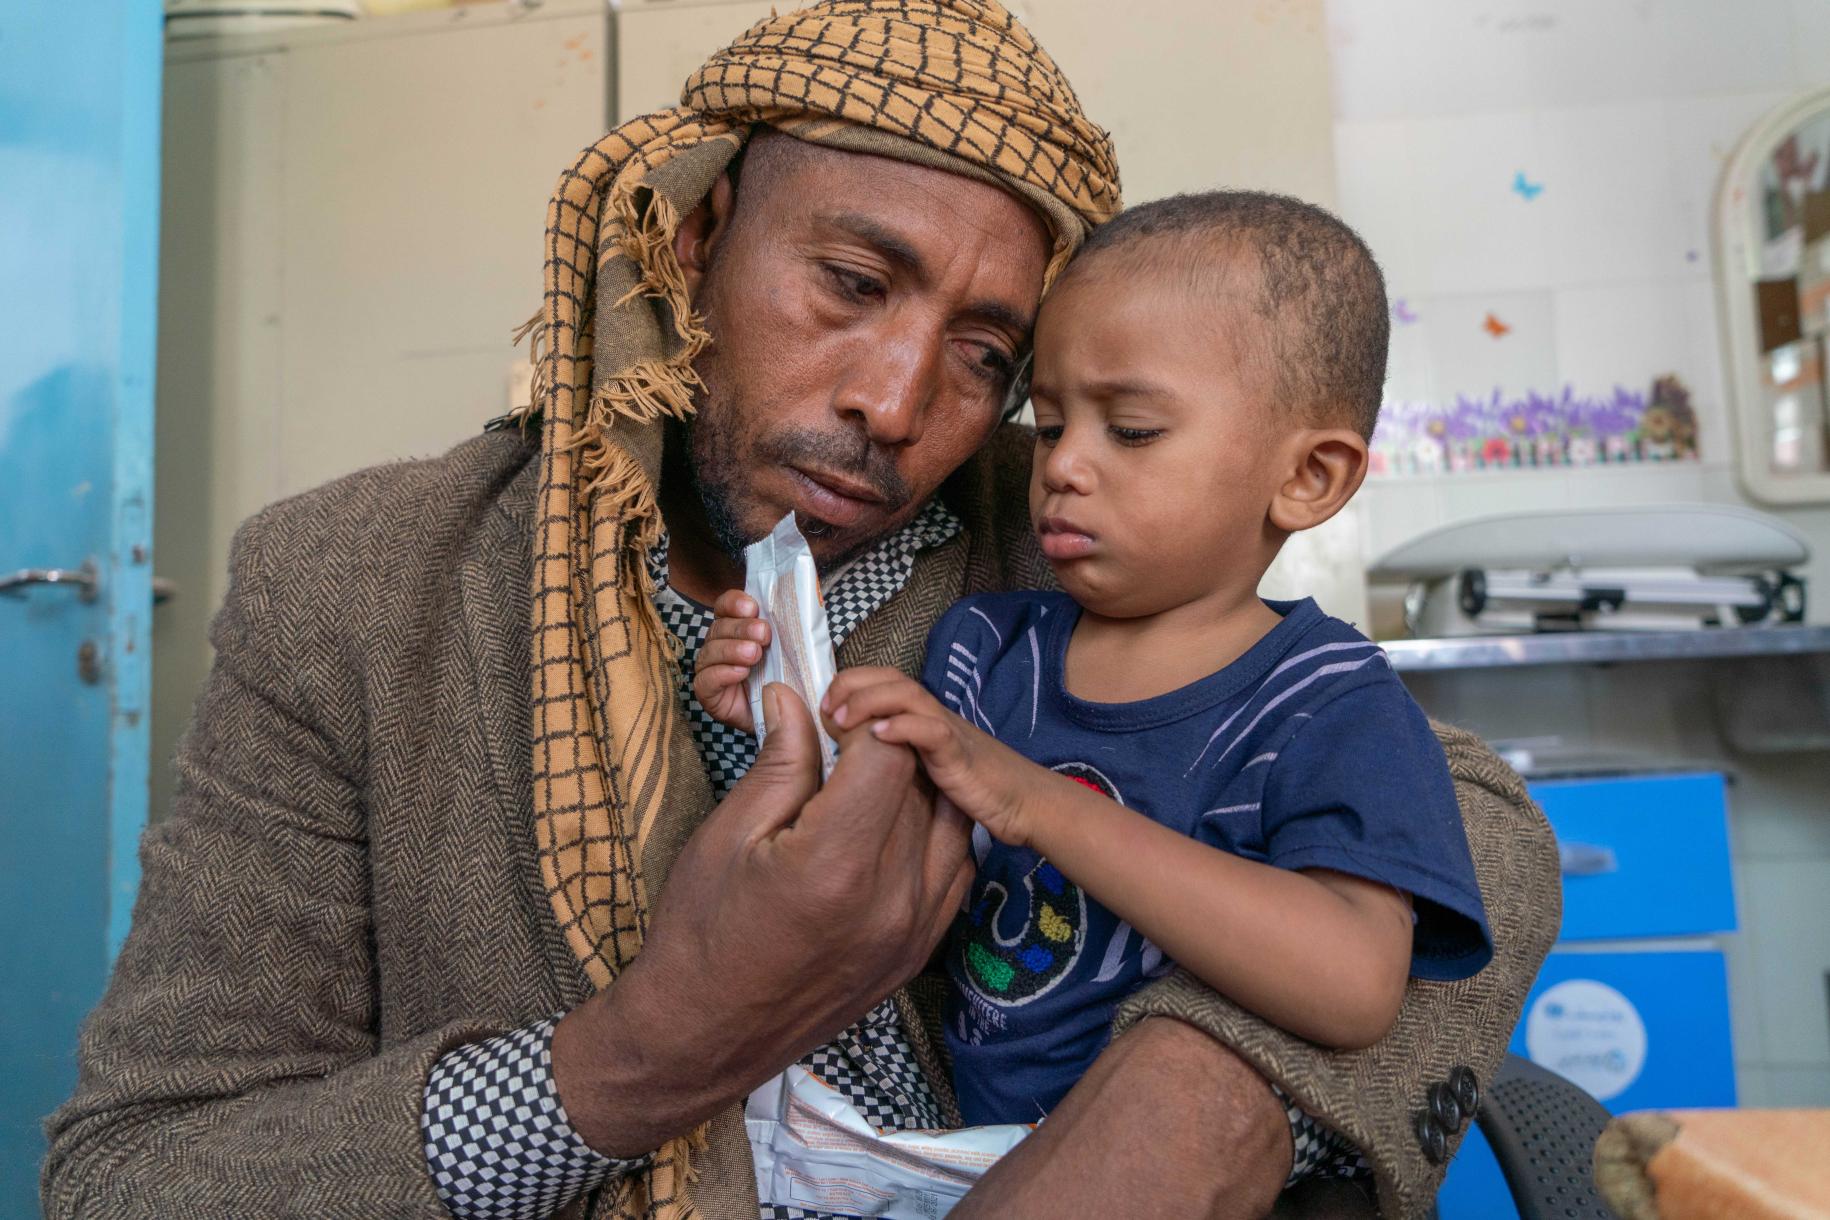 Sultan (1 año y 9 meses) que sufre de desnutrición moderada recibe suministros de un suplemento nutricional (Plumpy sup) en la clínica de salud apoyada por el PMA, en Amant Al Asimah. El niño pequeño aparece en primer plano, entre los brazos de su padre, Arafat (37), quien mira con amor a su hijo.